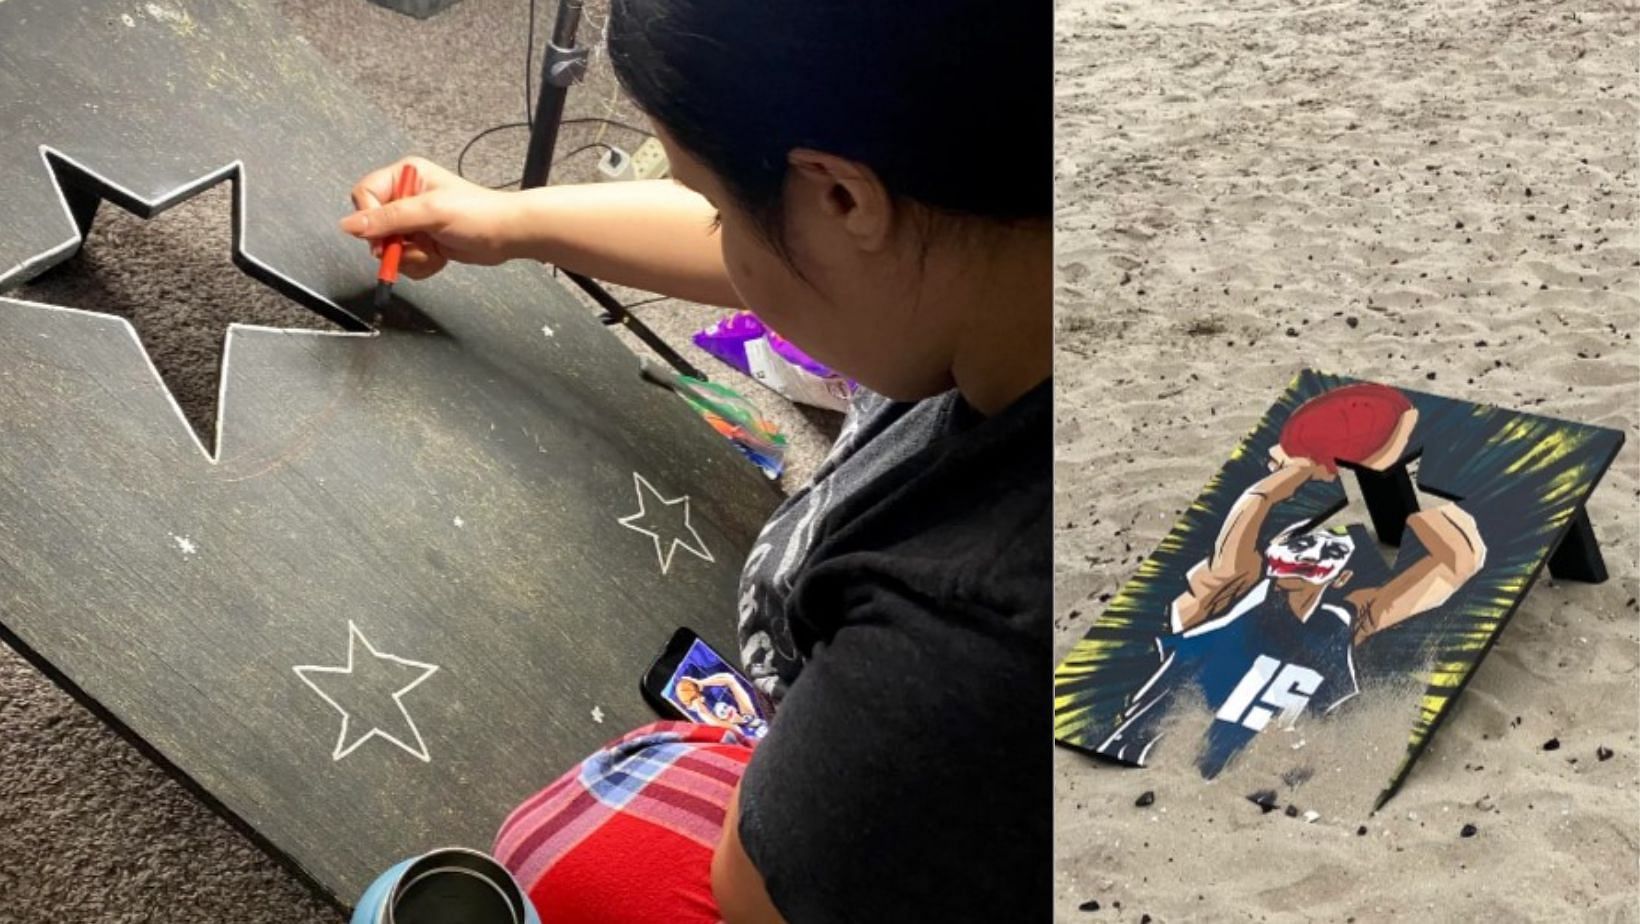 Nikola Jokic is artfully created in a cornhole board by a young Denver Nuggets fan.